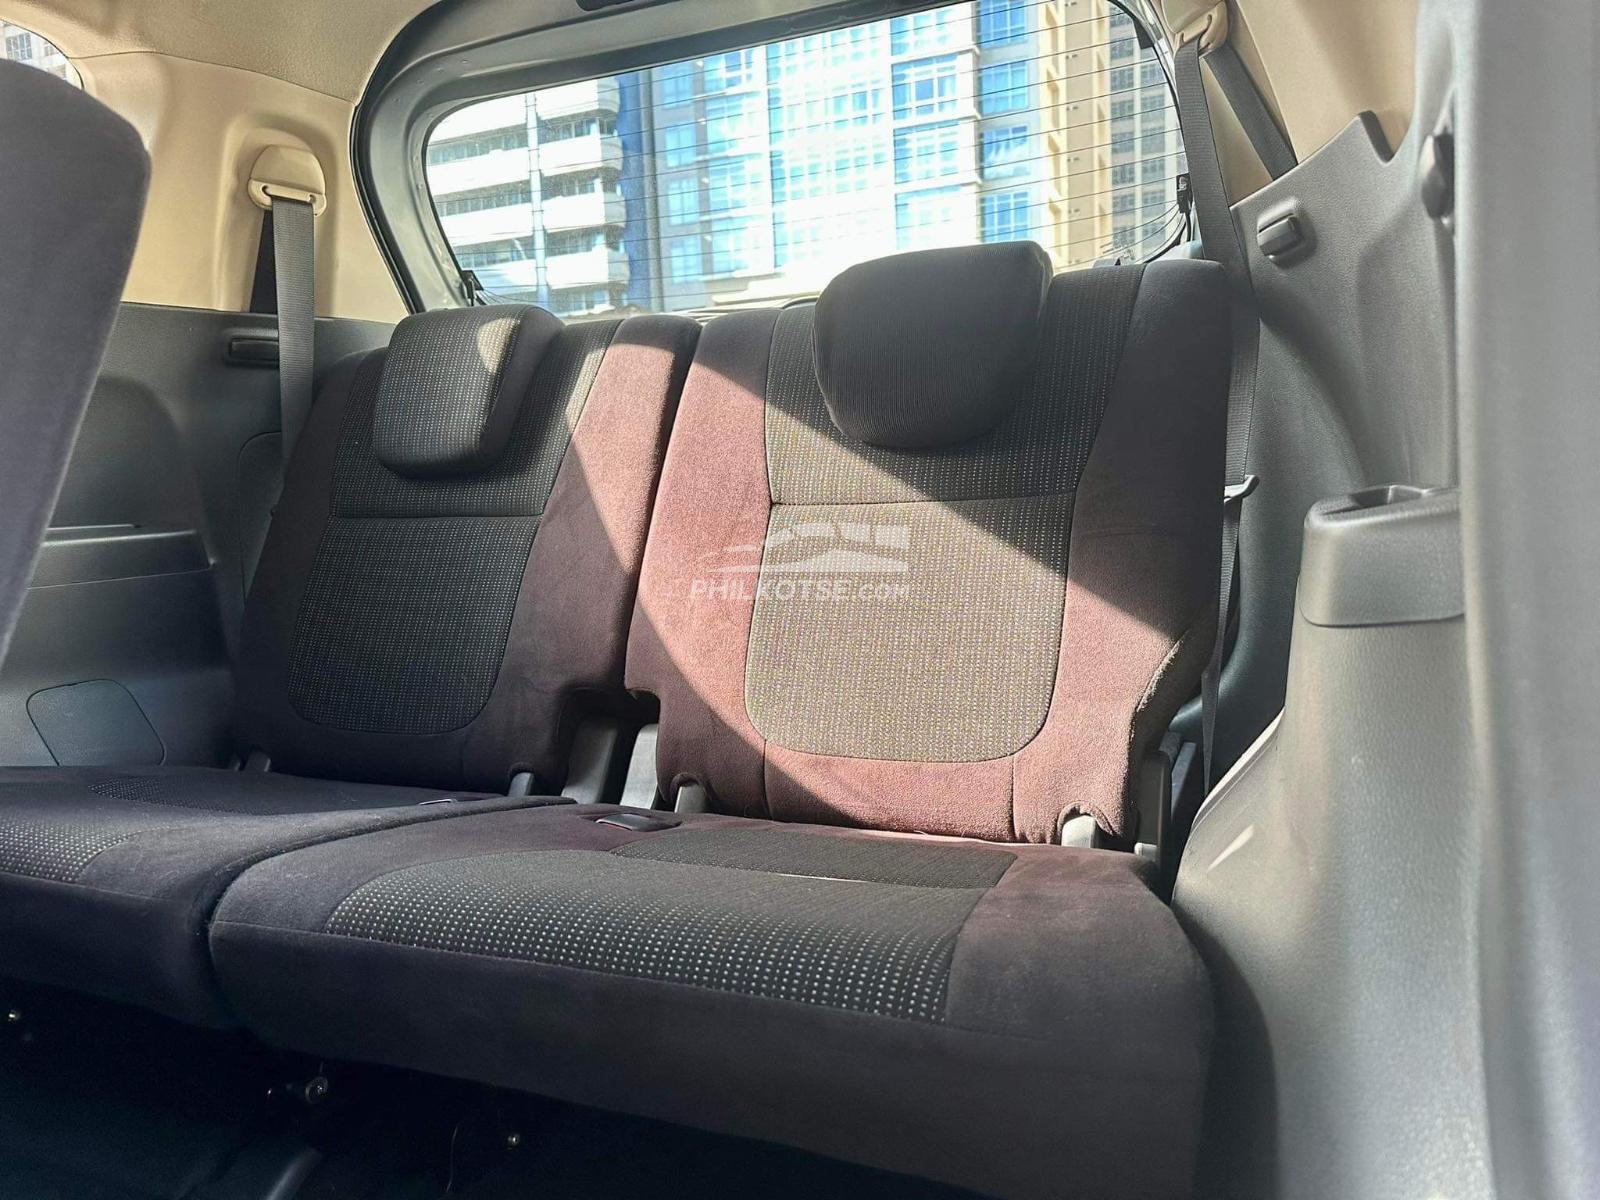 2019 Mitsubishi Xpander GLX Plus 1.5G 2WD AT in Makati, Metro Manila